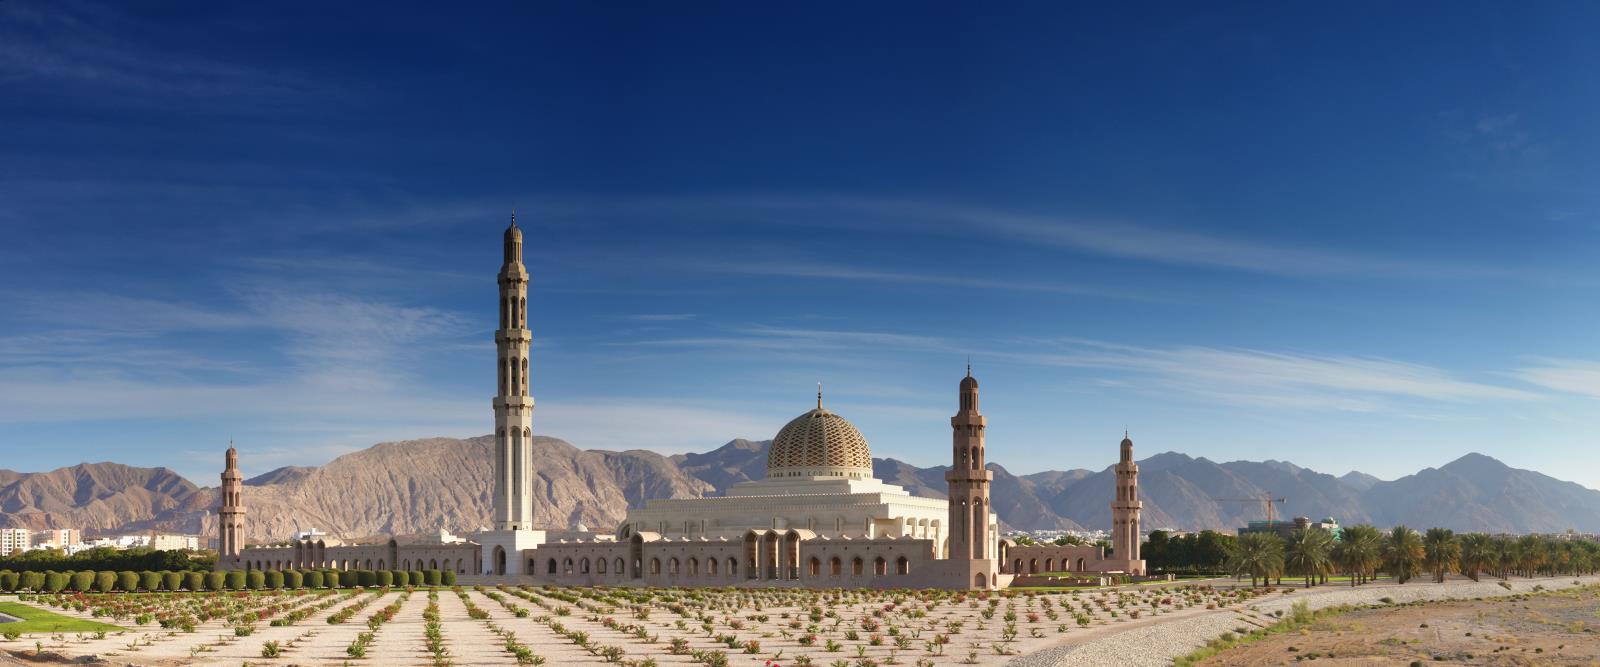 Luxury Oman Holidays - Mosque